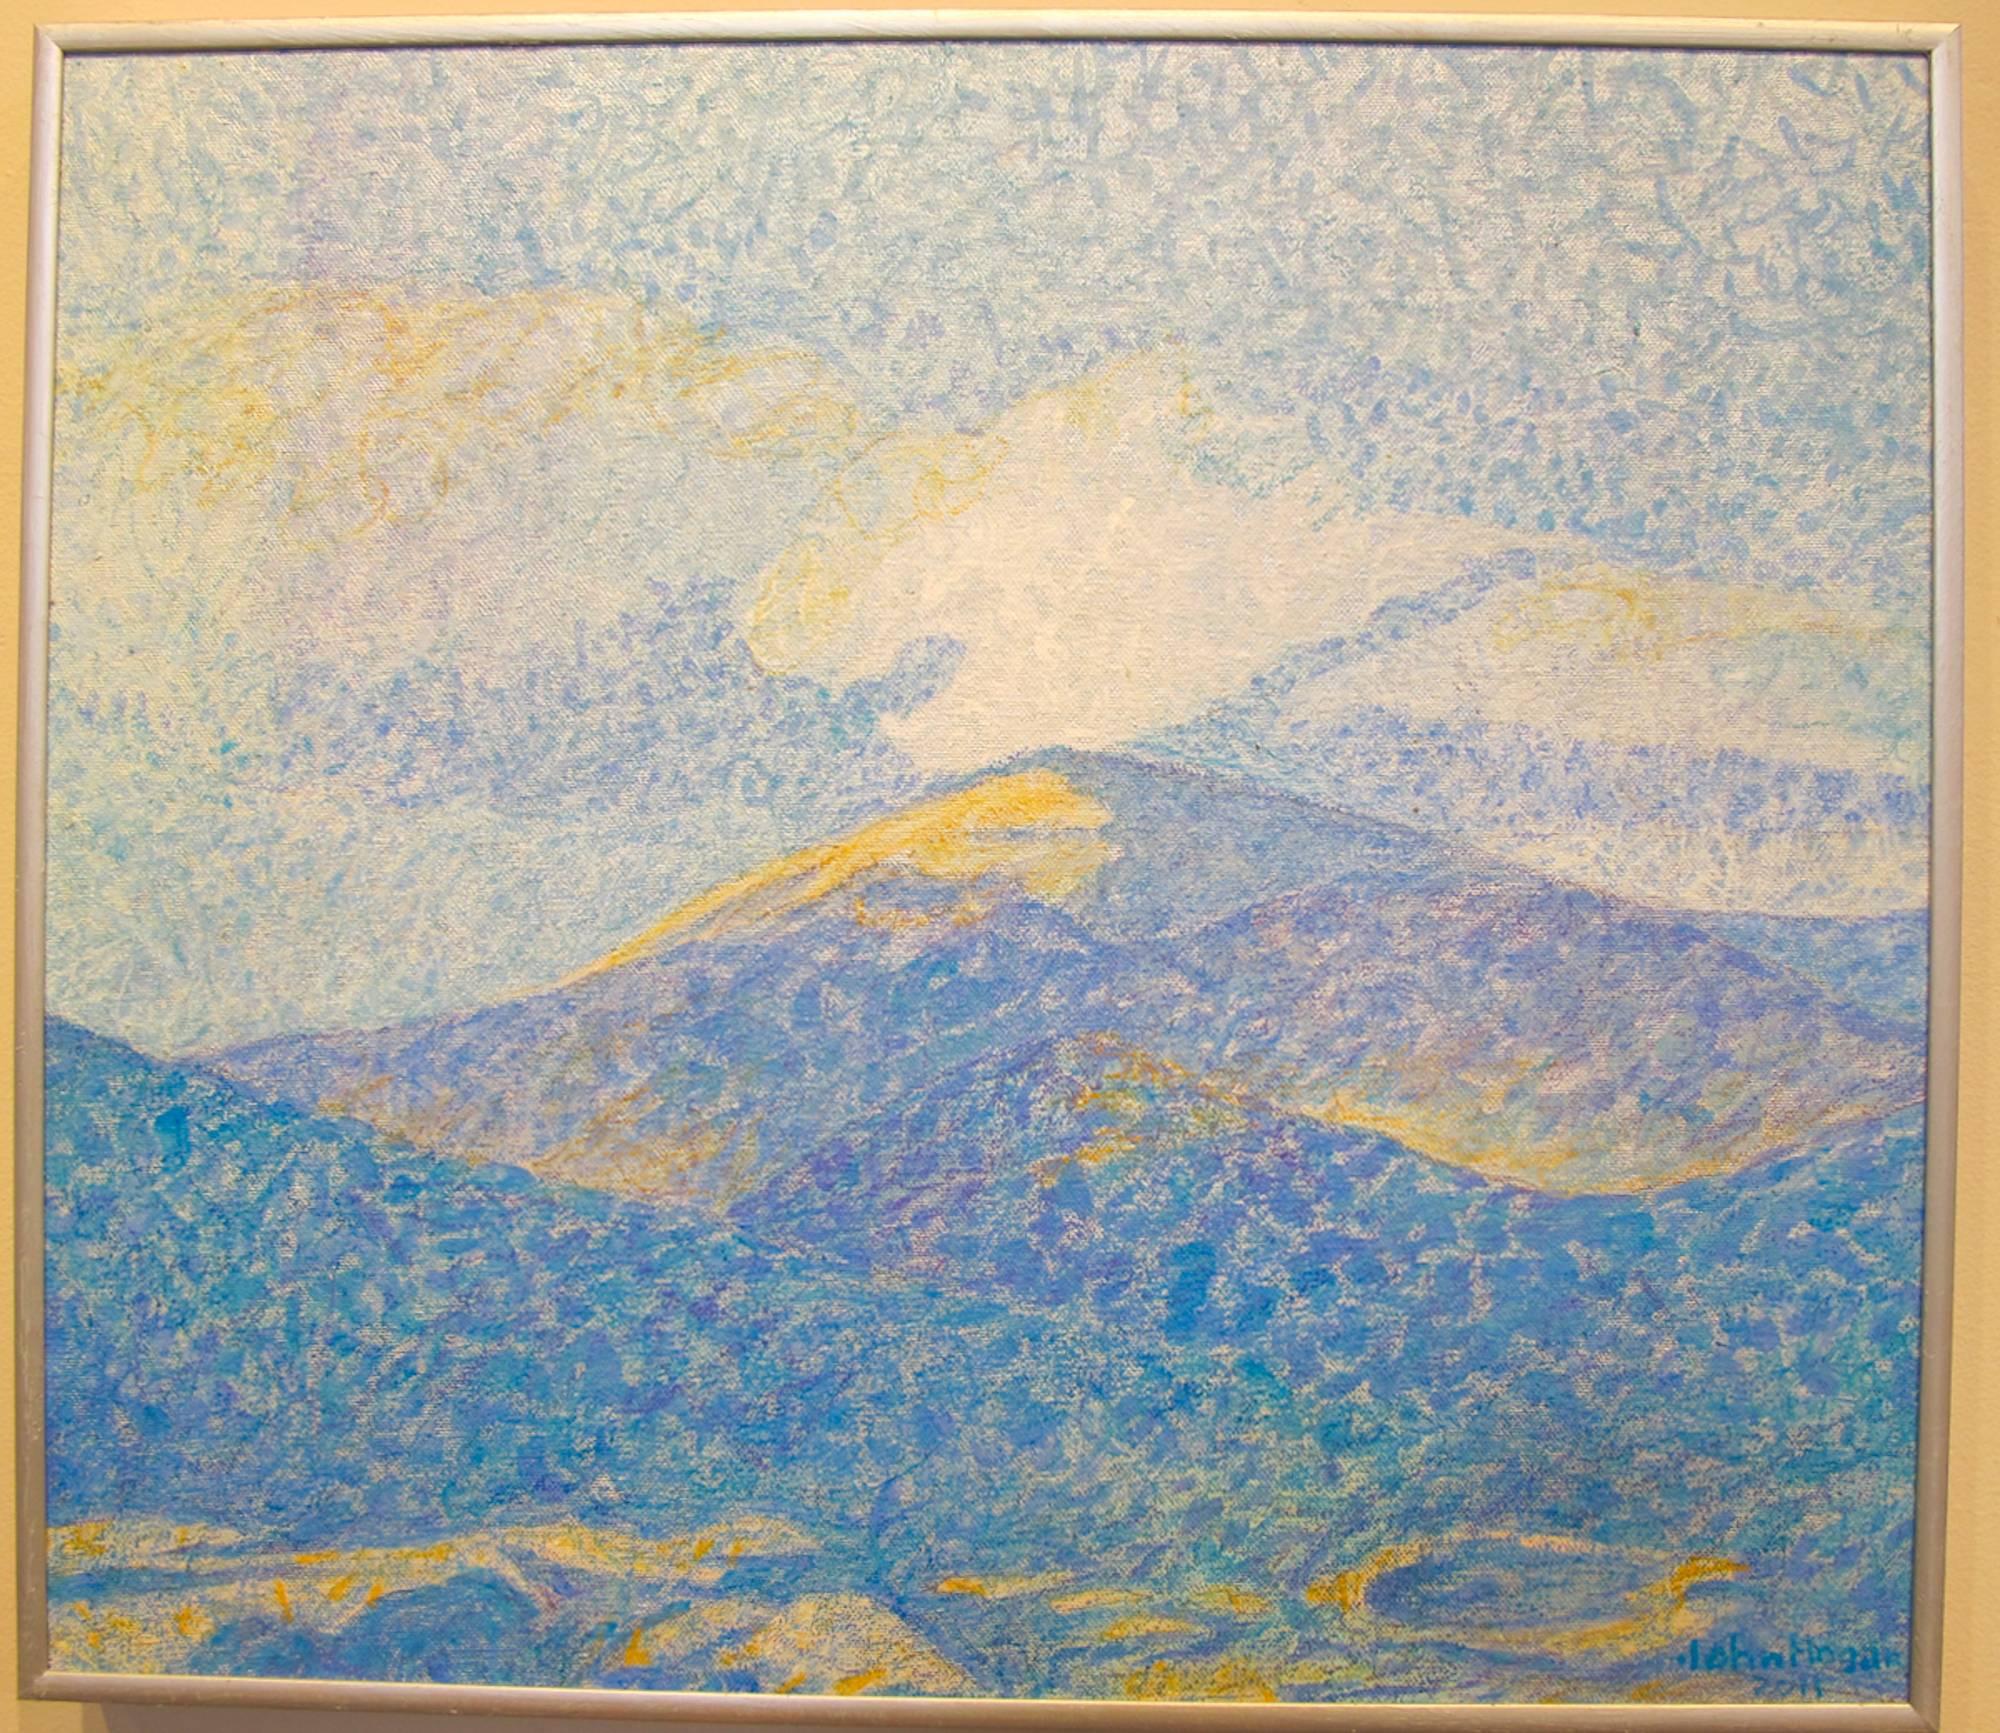 John Hogan Landscape Painting – Clouds Over the Jemez, einzigartiges Gemälde, neue Mexico-Landschaft, Wolken, Berge